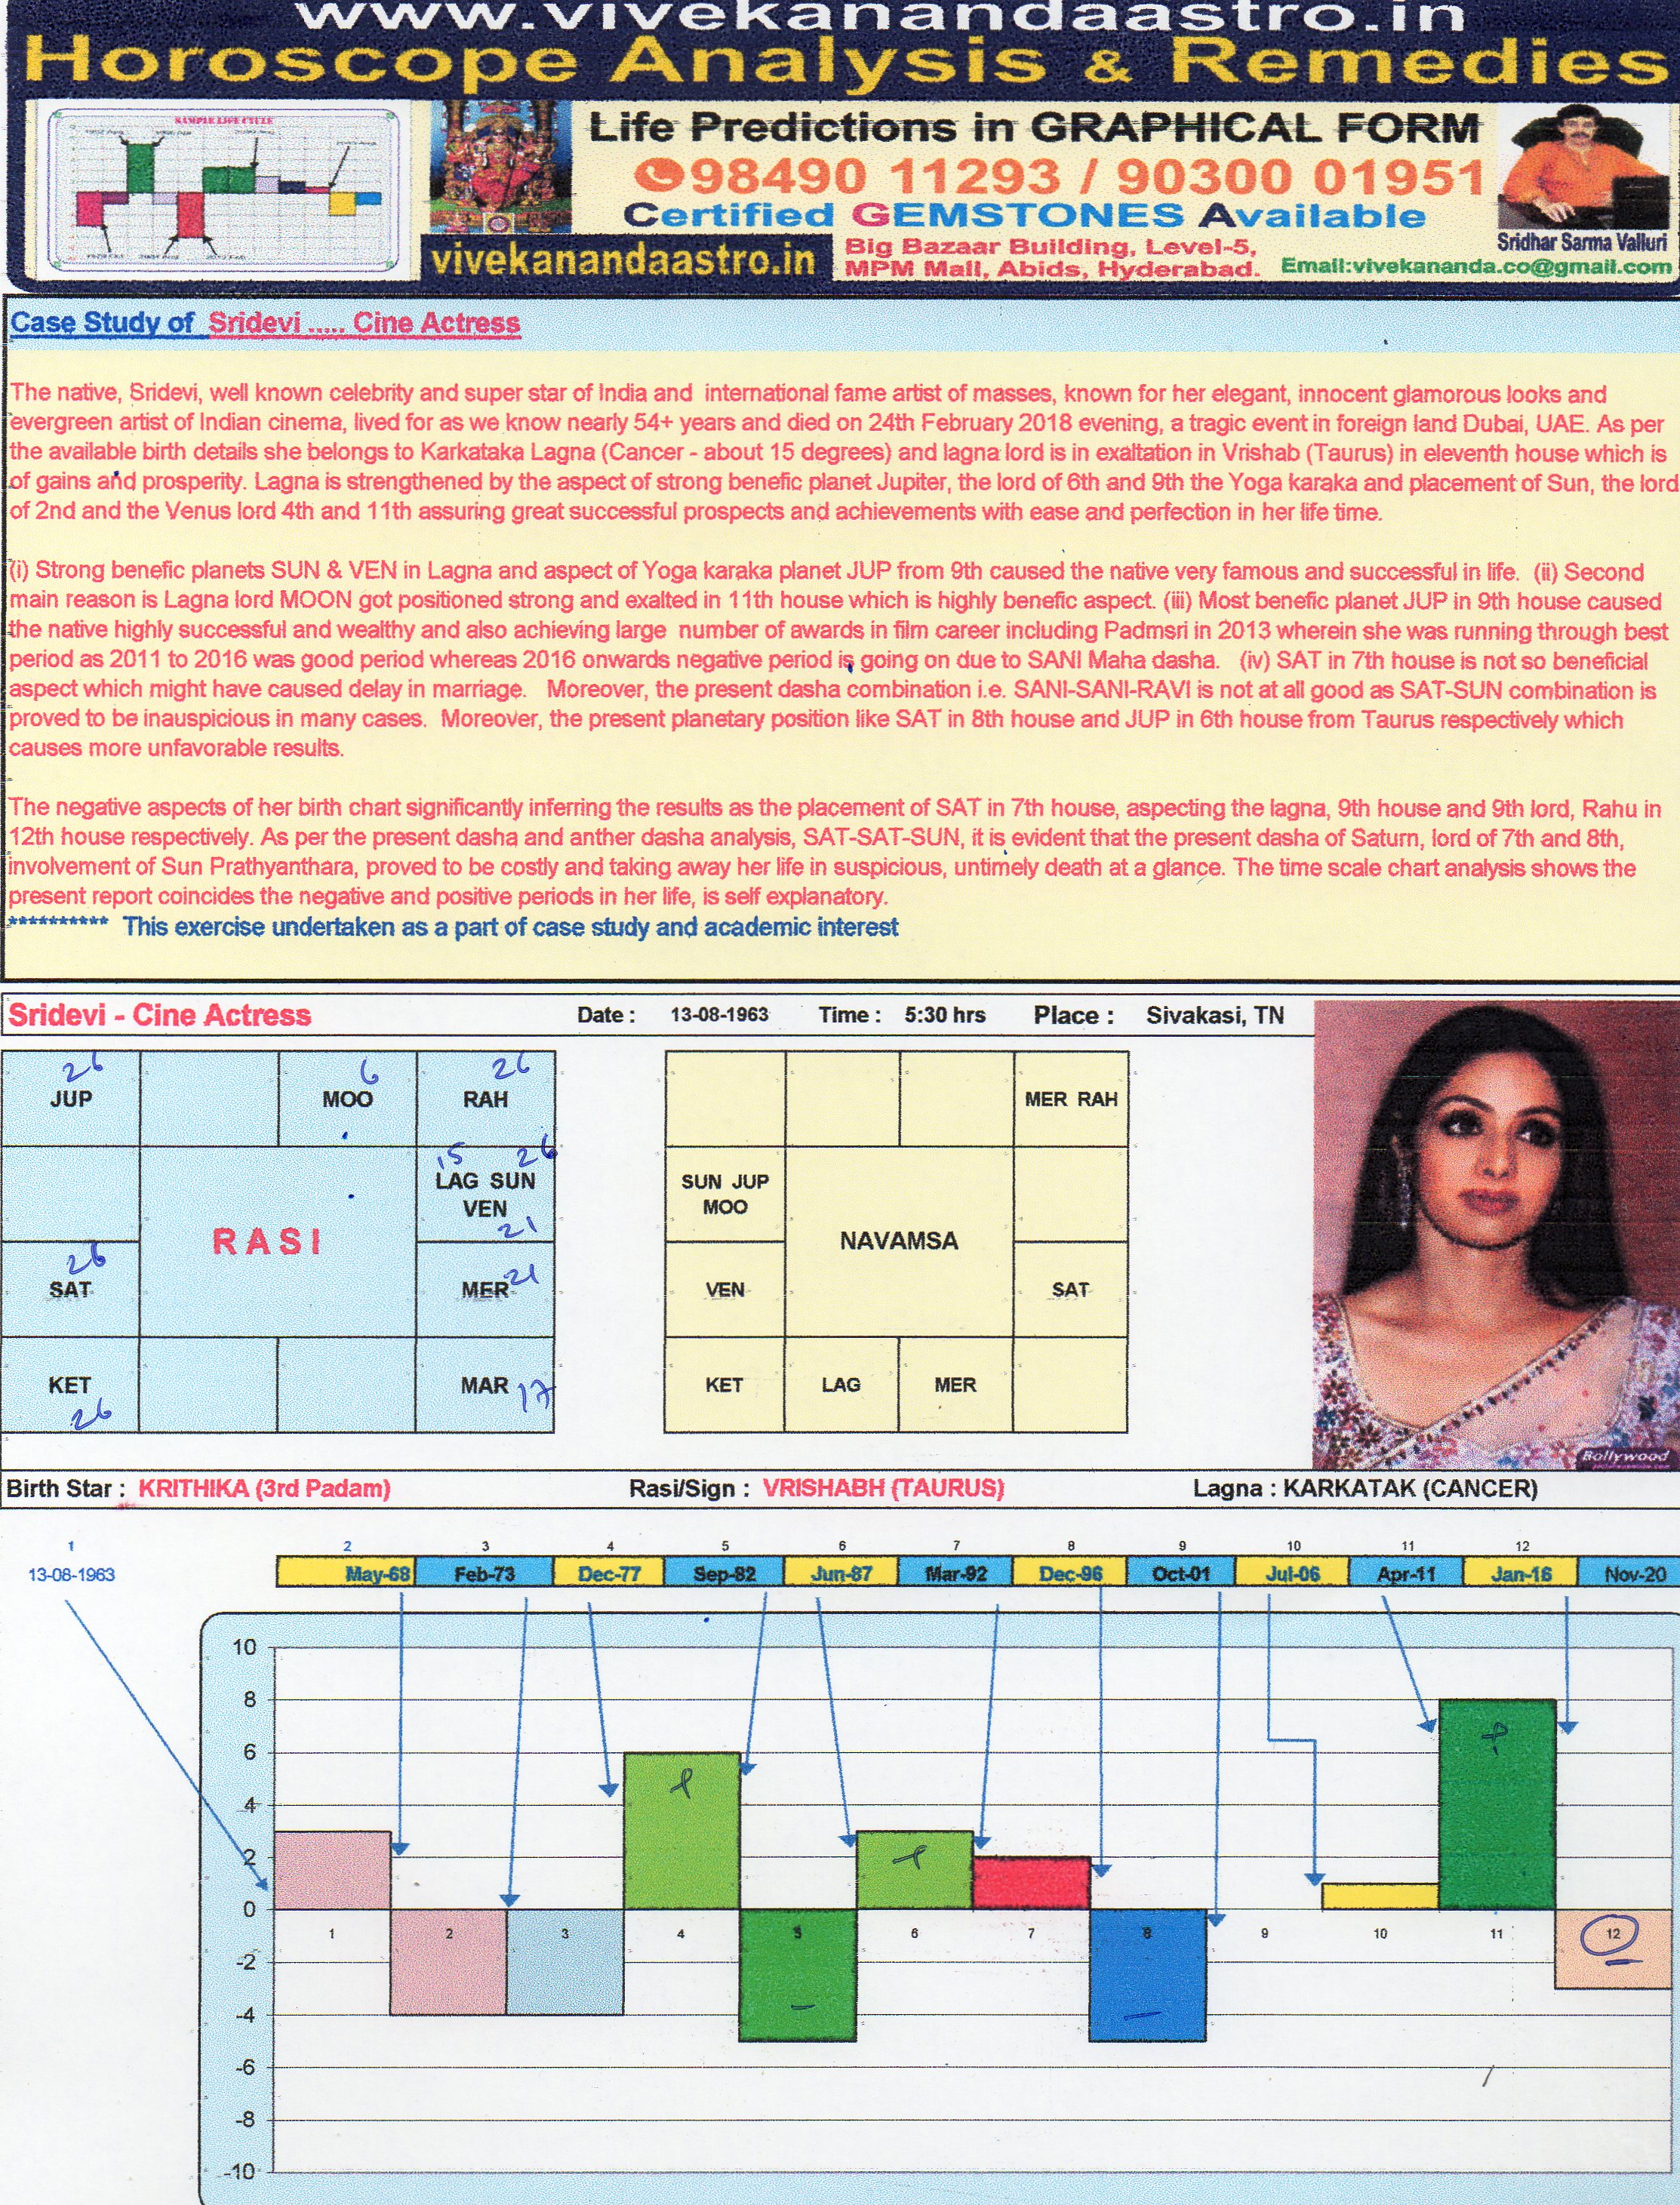 Swami Vivekananda Birth Chart Analysis